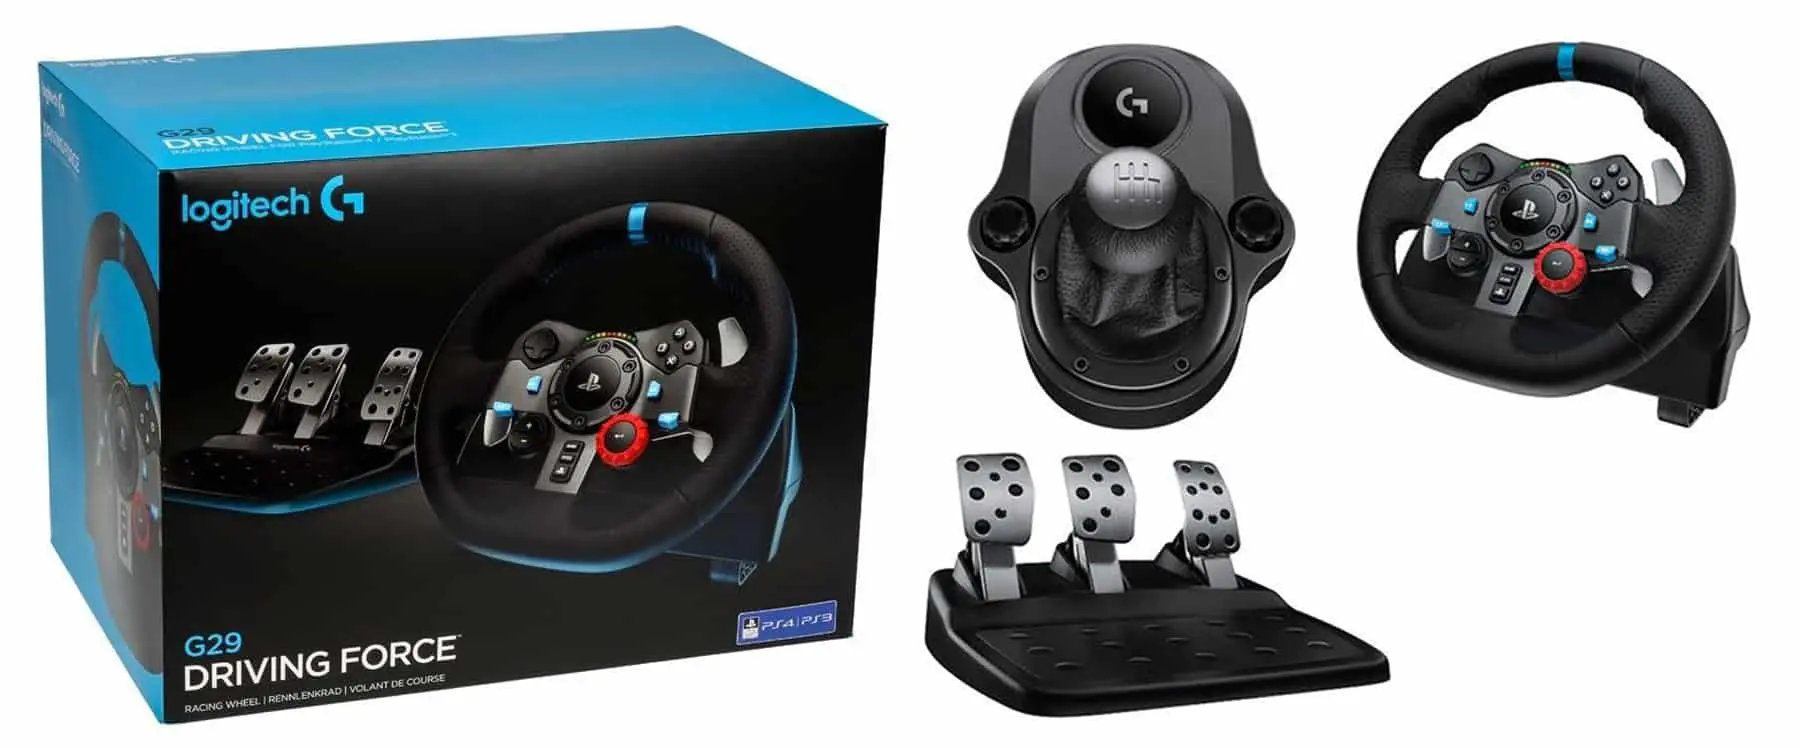 Thrustmaster T248 force feedback racing wheel $400 - Geeky Gadgets